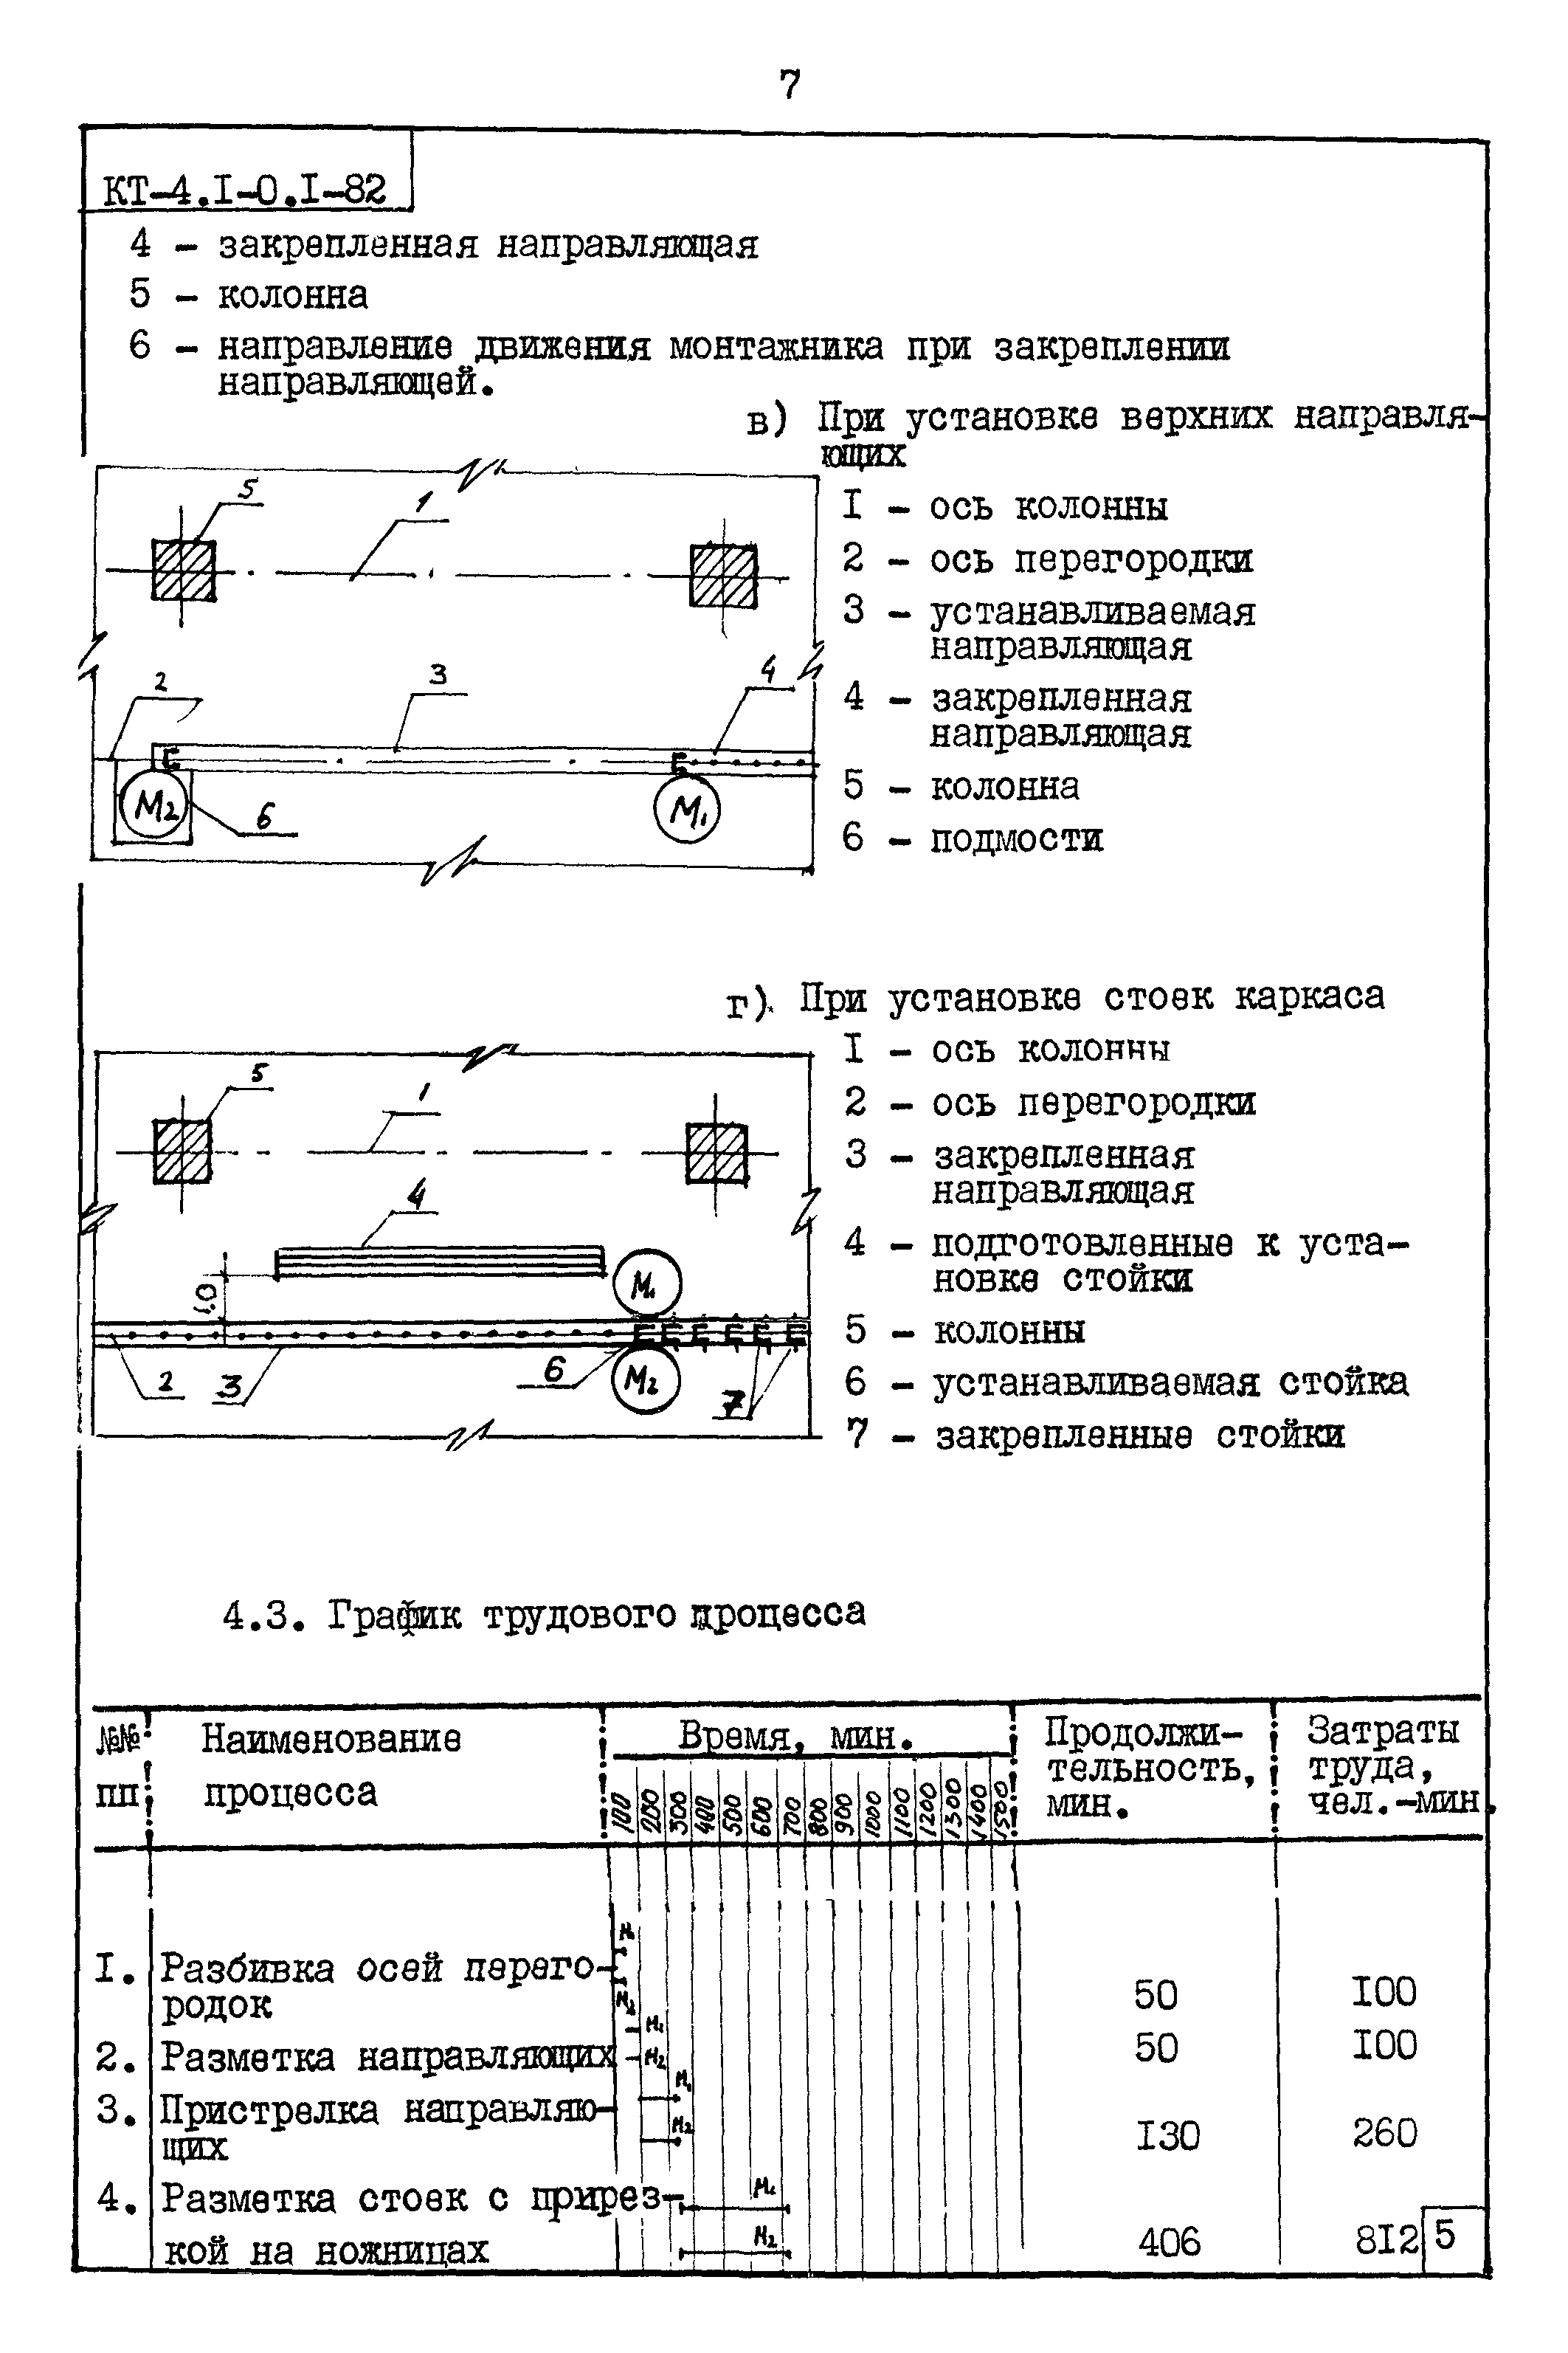 Карта трудового процесса КТ-4.1-0.1-82